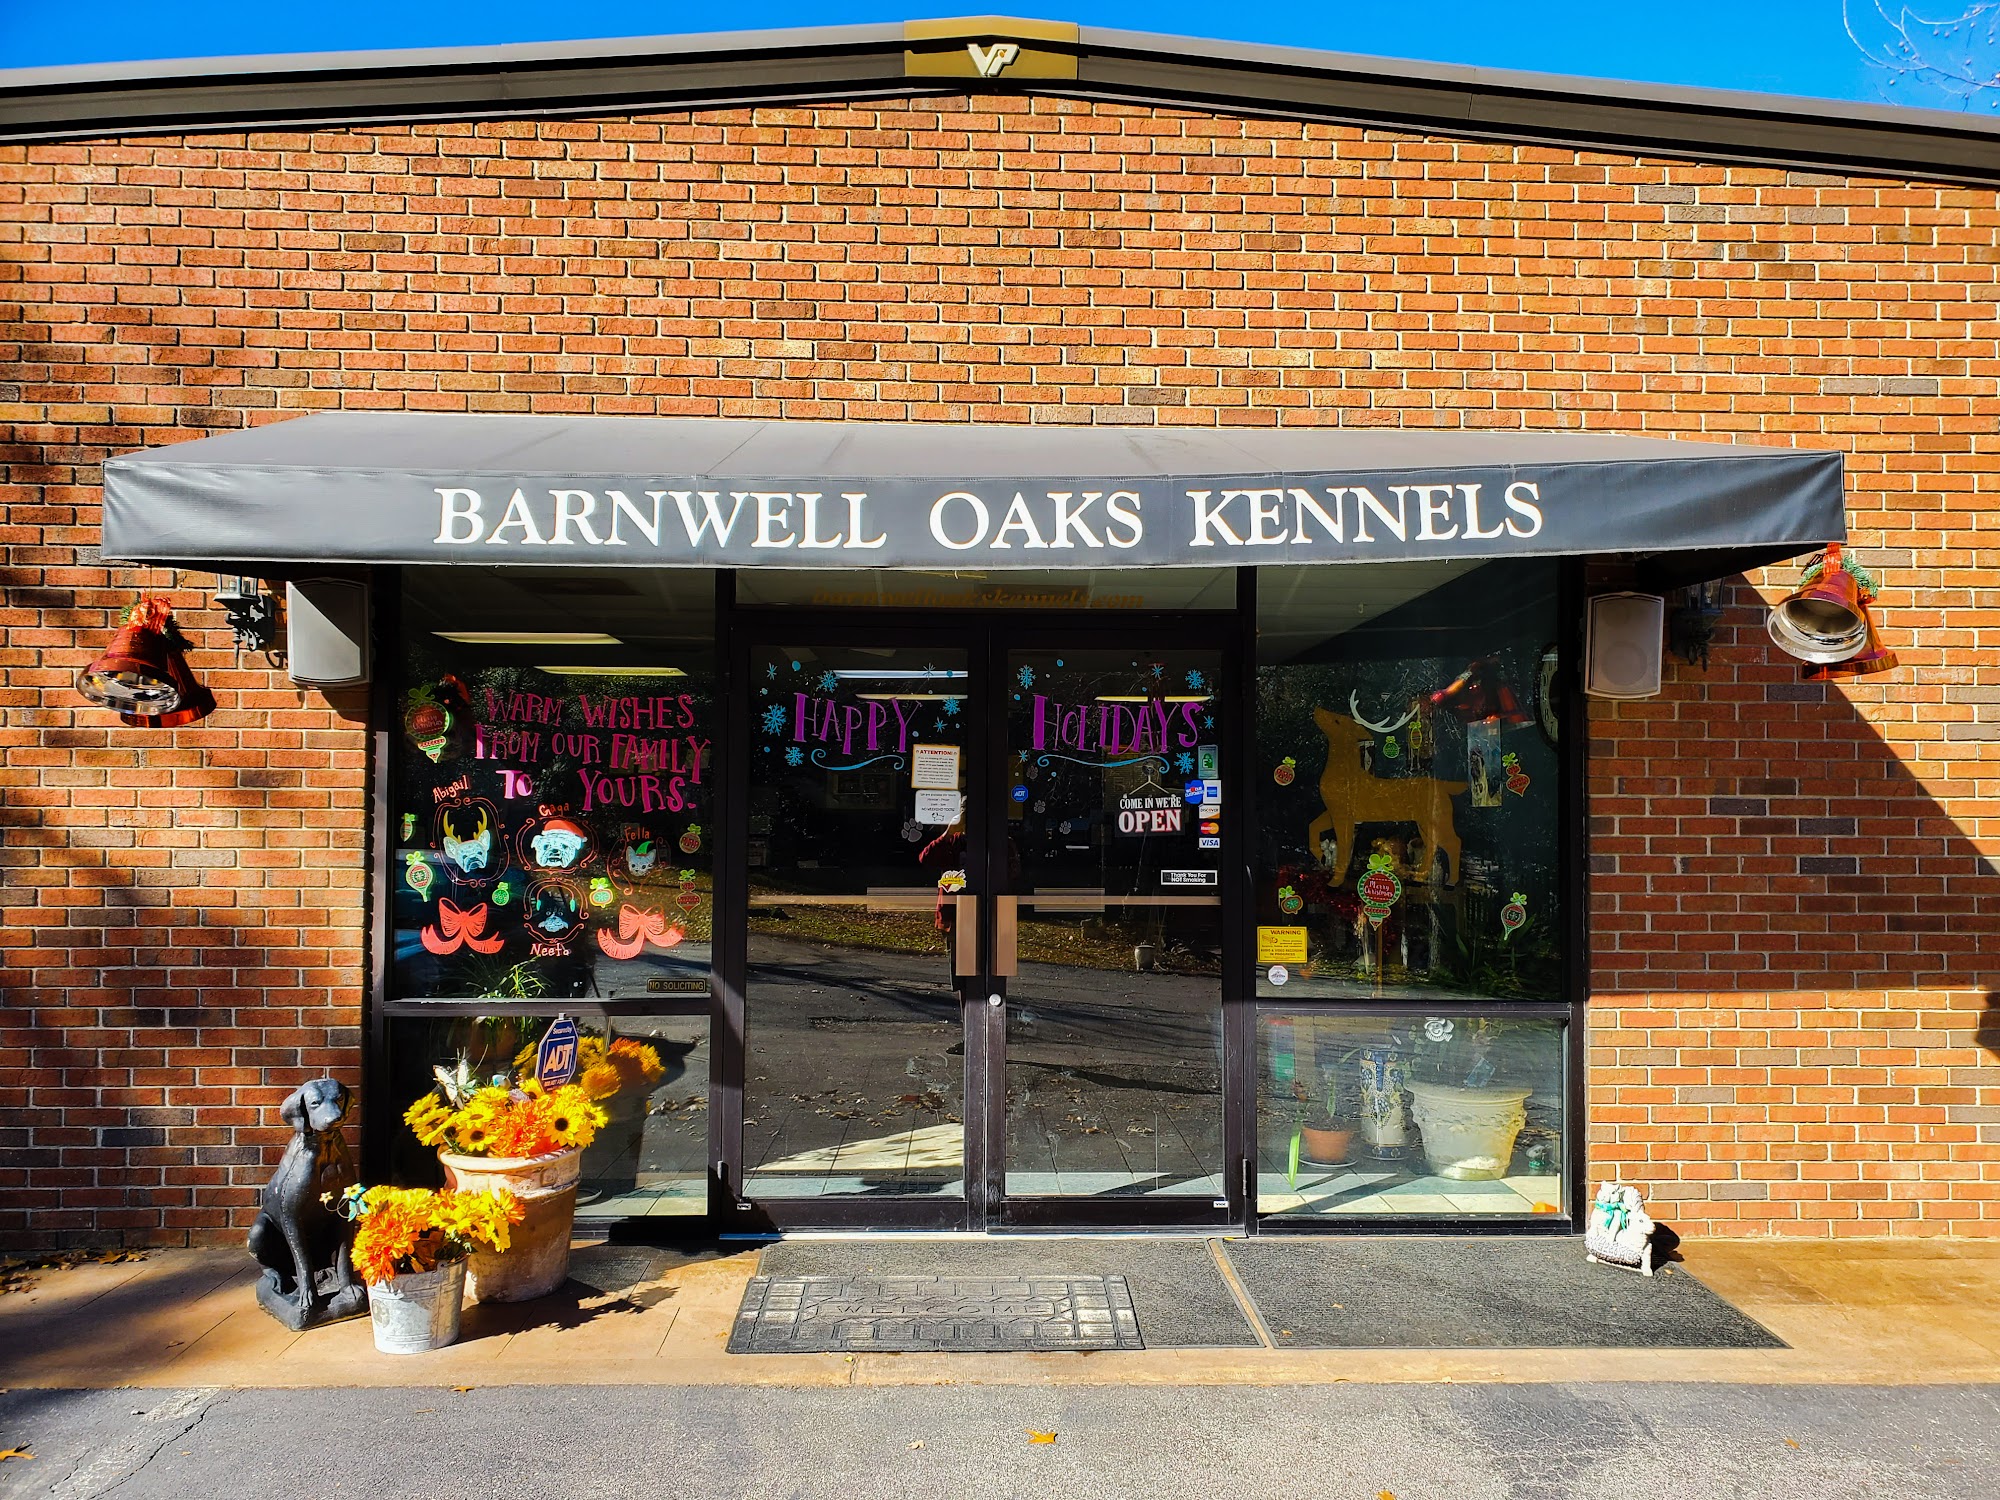 Barnwell Oaks Kennels